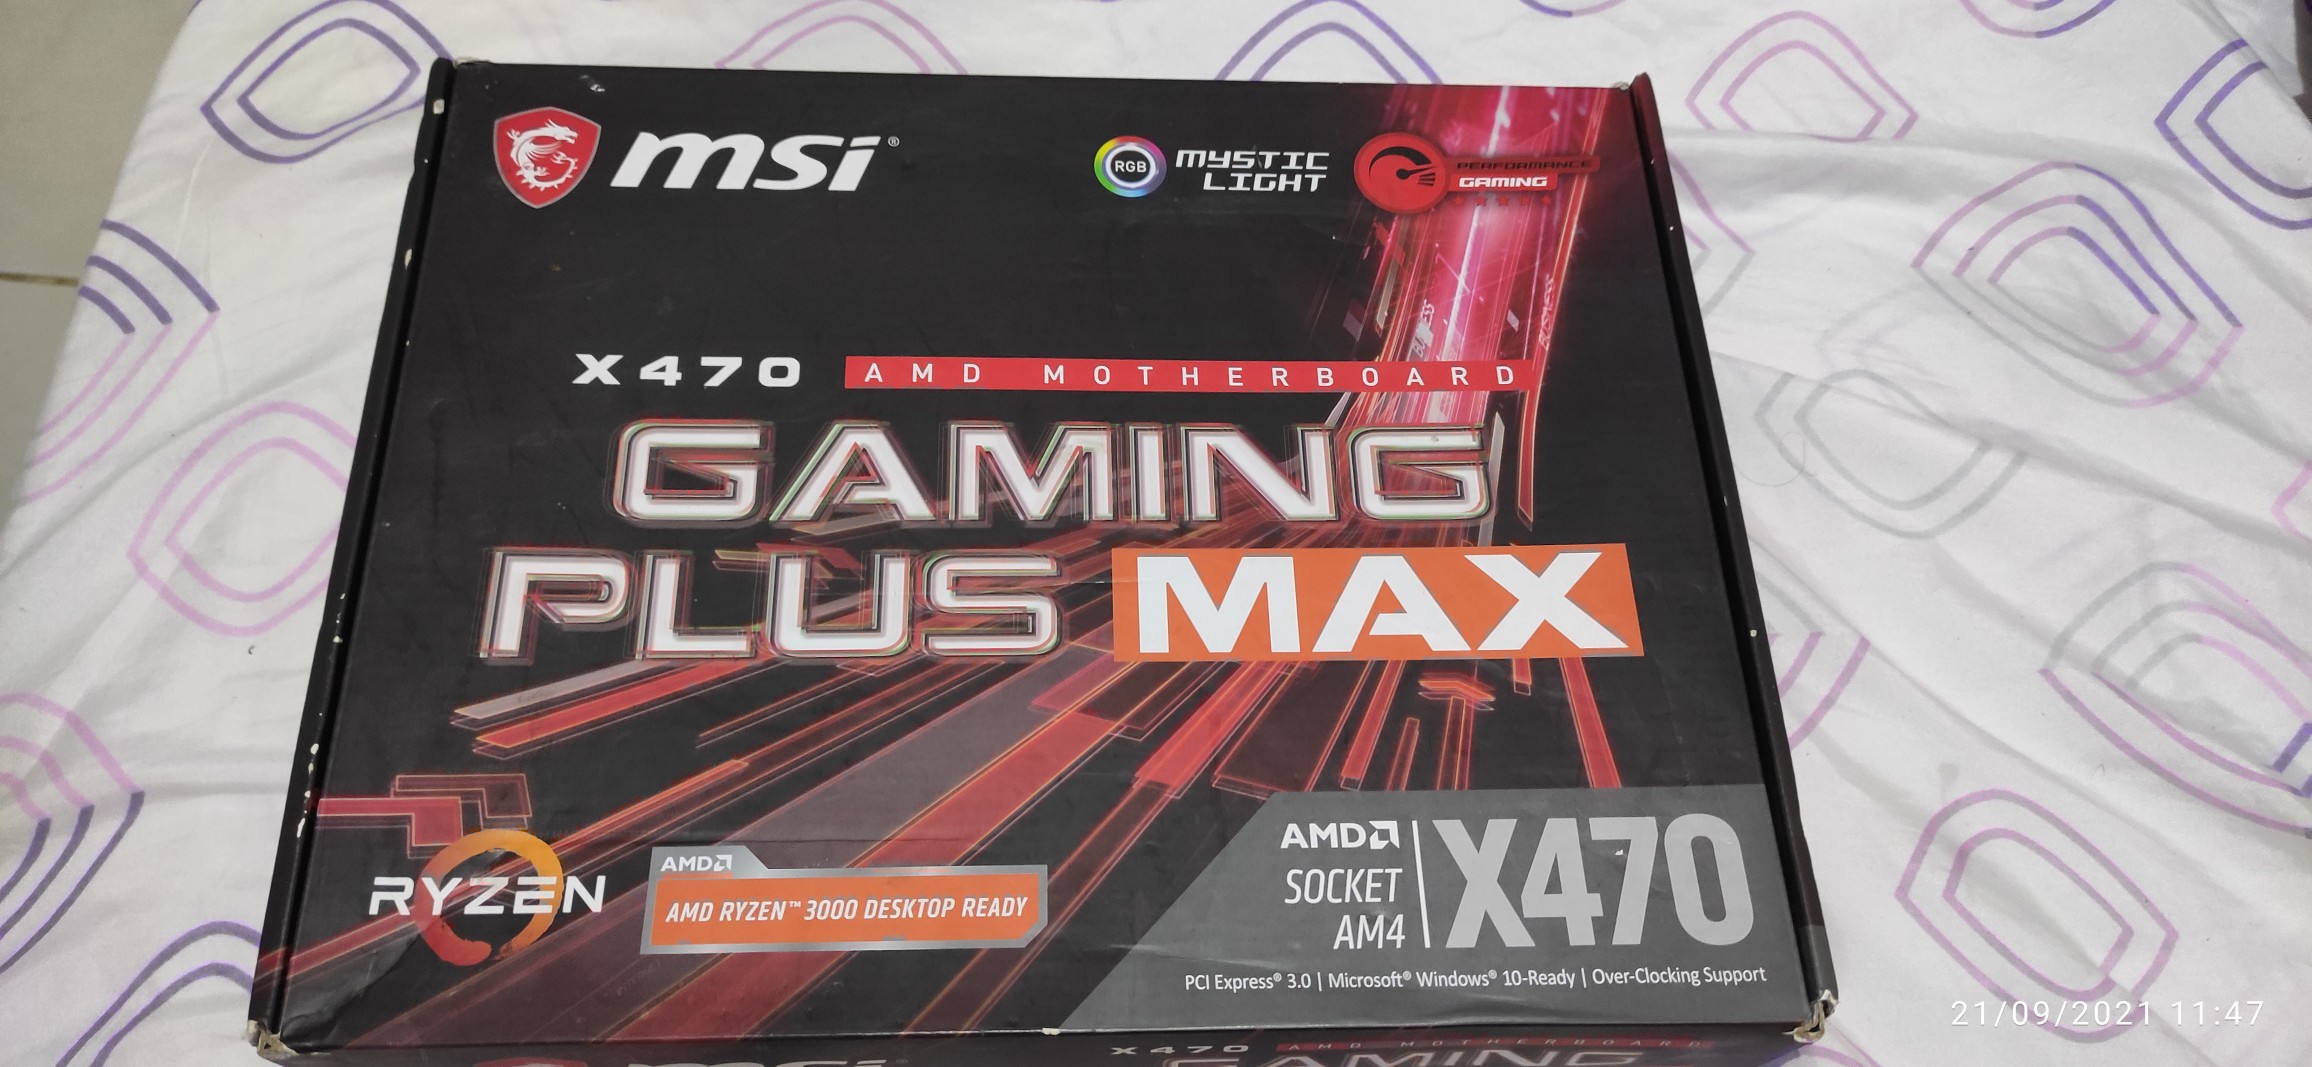 Motherboard x470 MSI gaming plus max